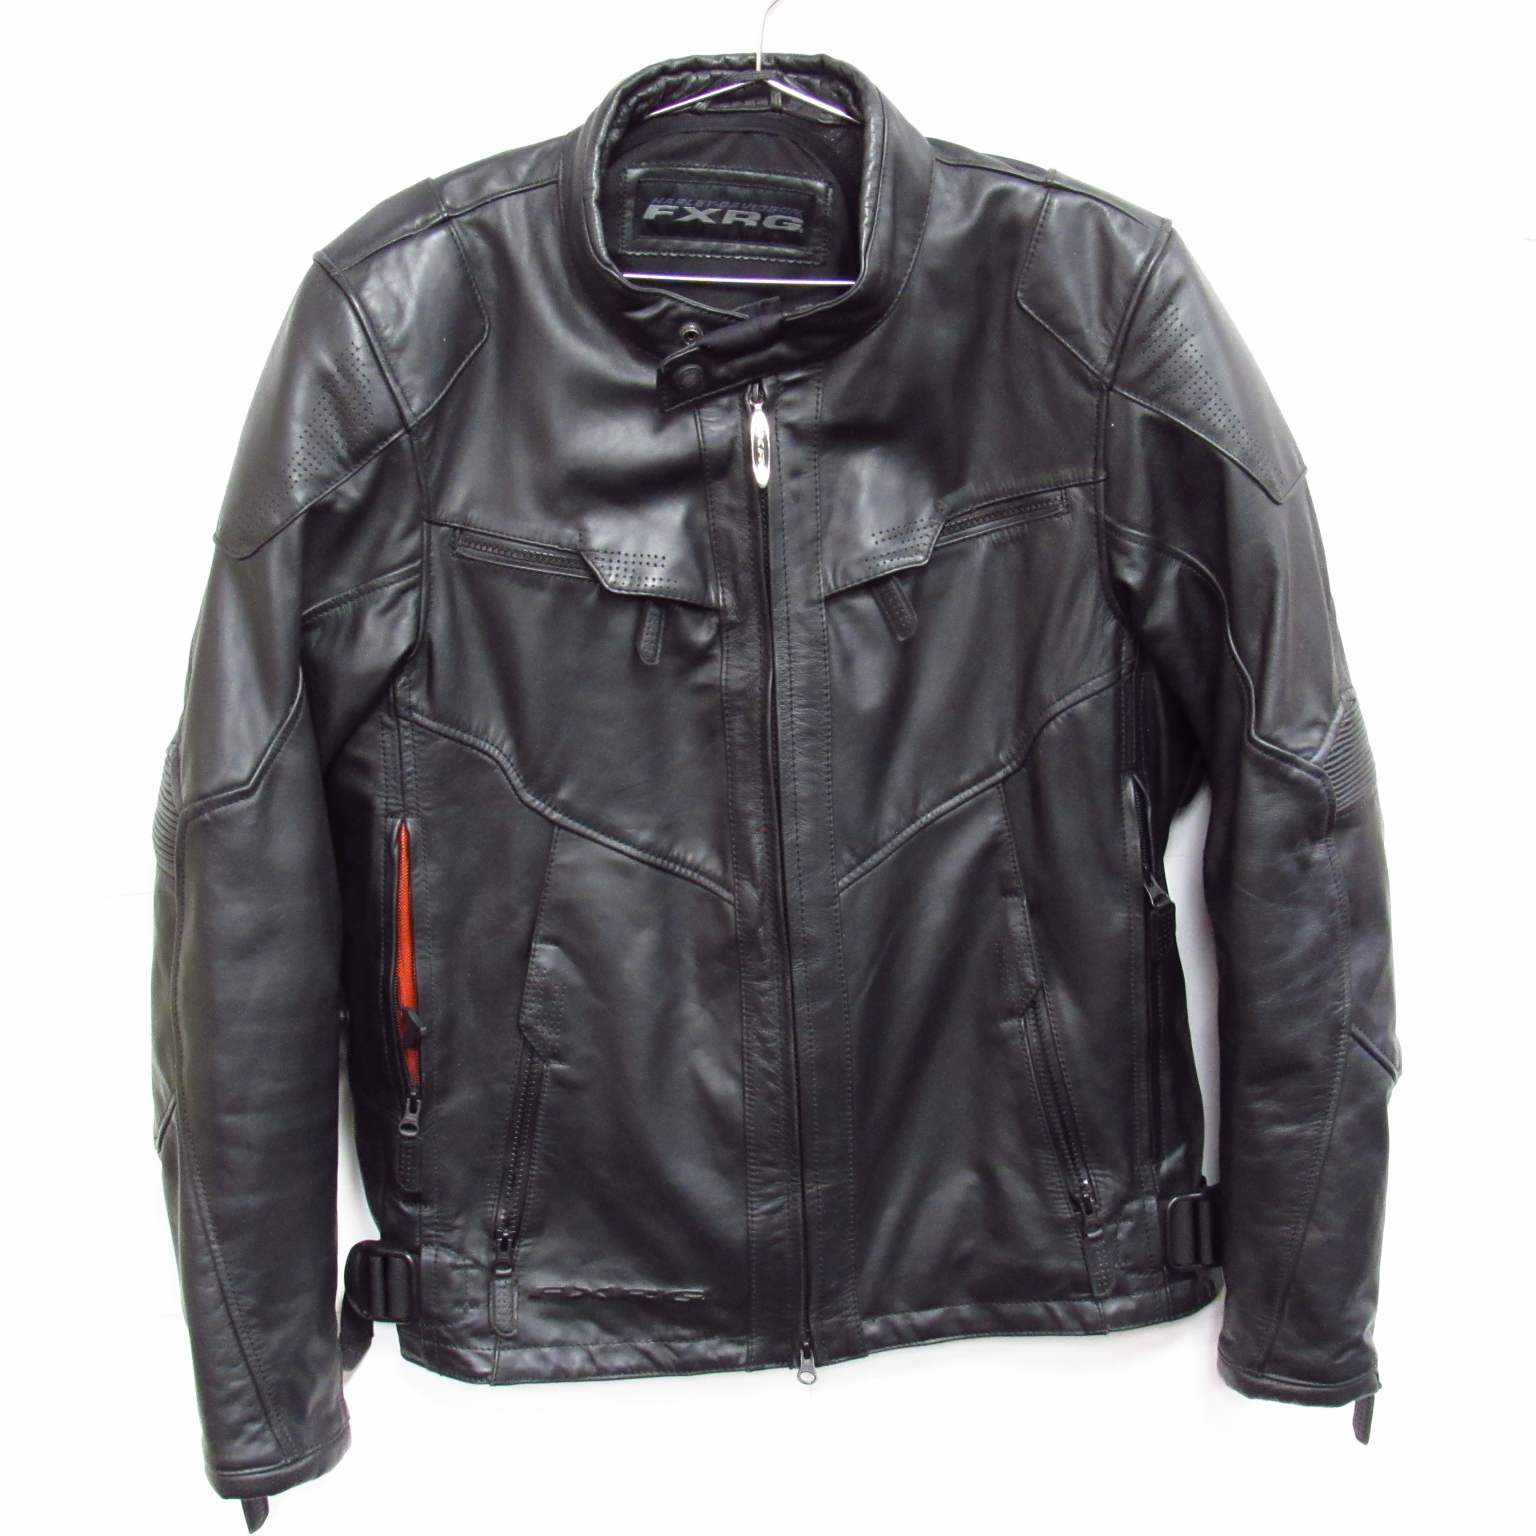 Harley Davidson FXRG Leather Motorcycle Jacket Size Large